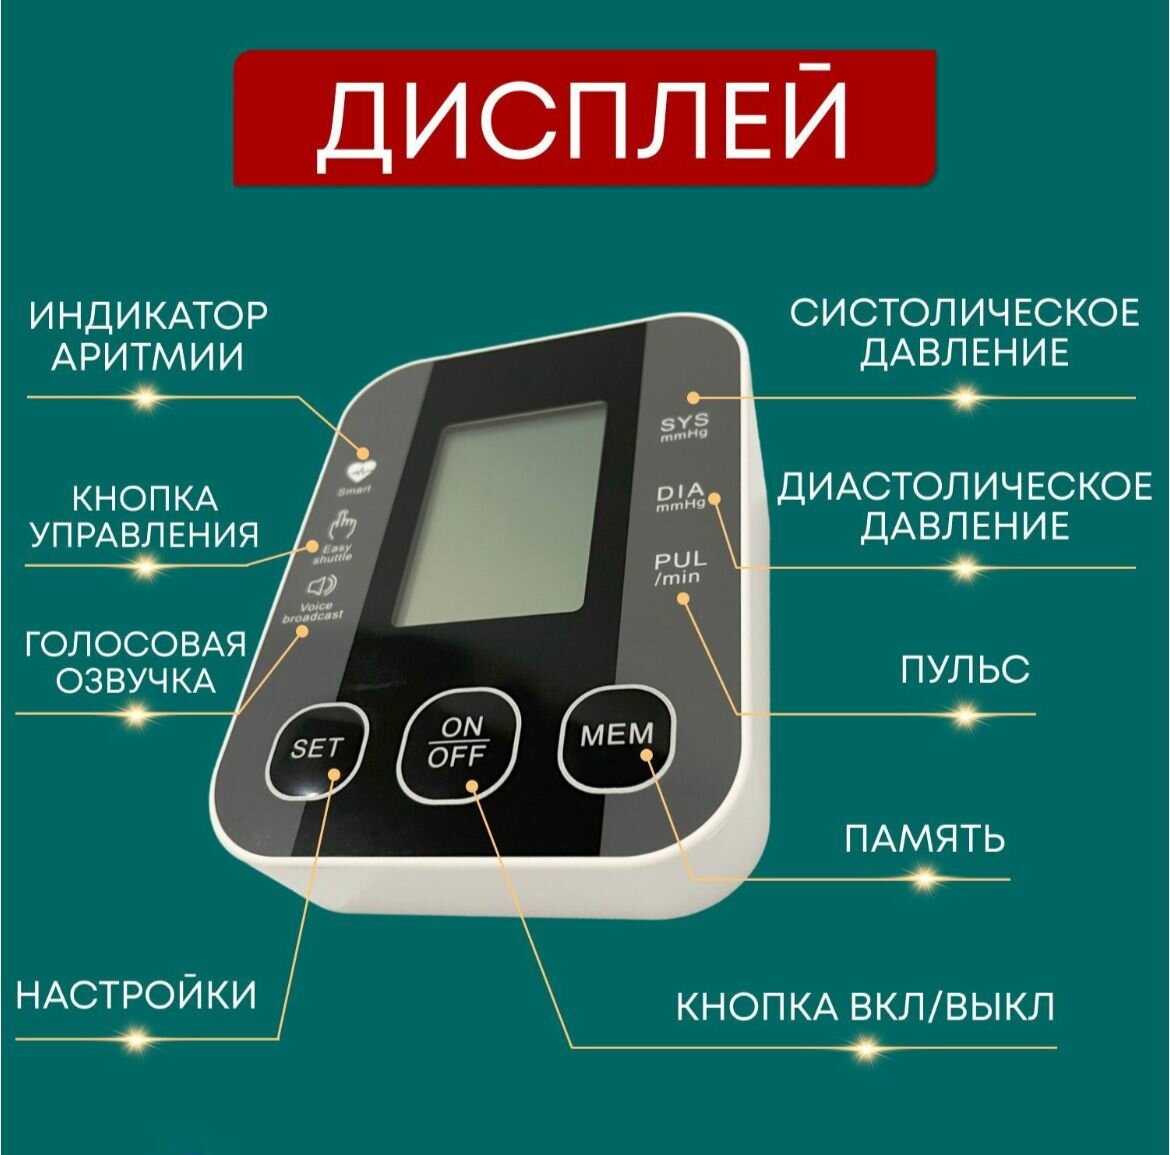 Тонометр автоматический медицинский для измерения артериального давления с индикатором аритмии с голосовым оповещением на русском языке